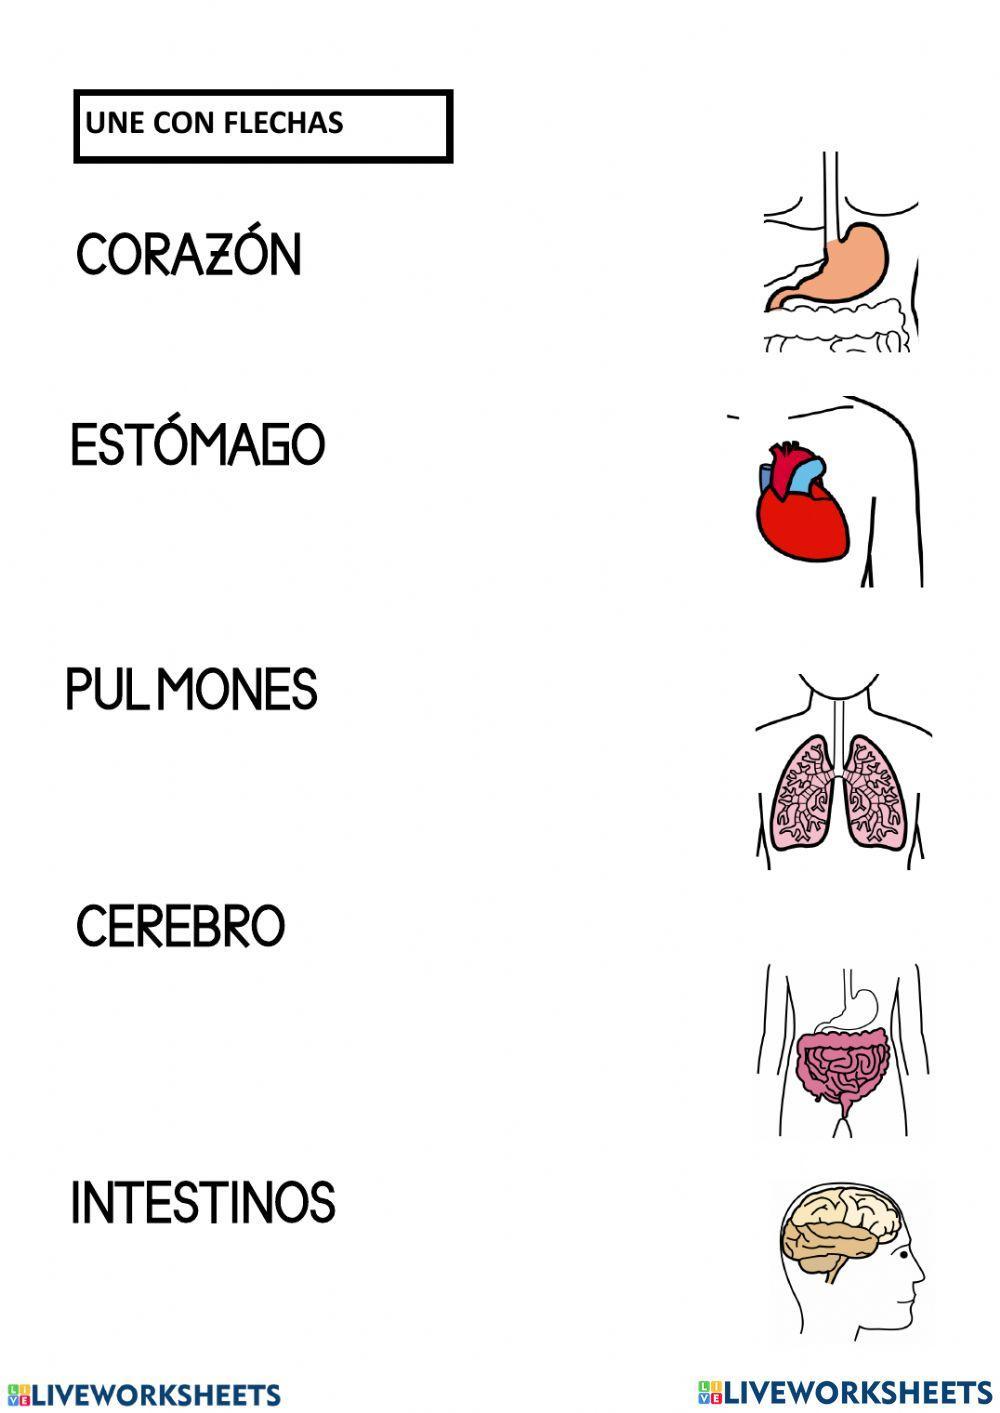 Organos del cuerpo